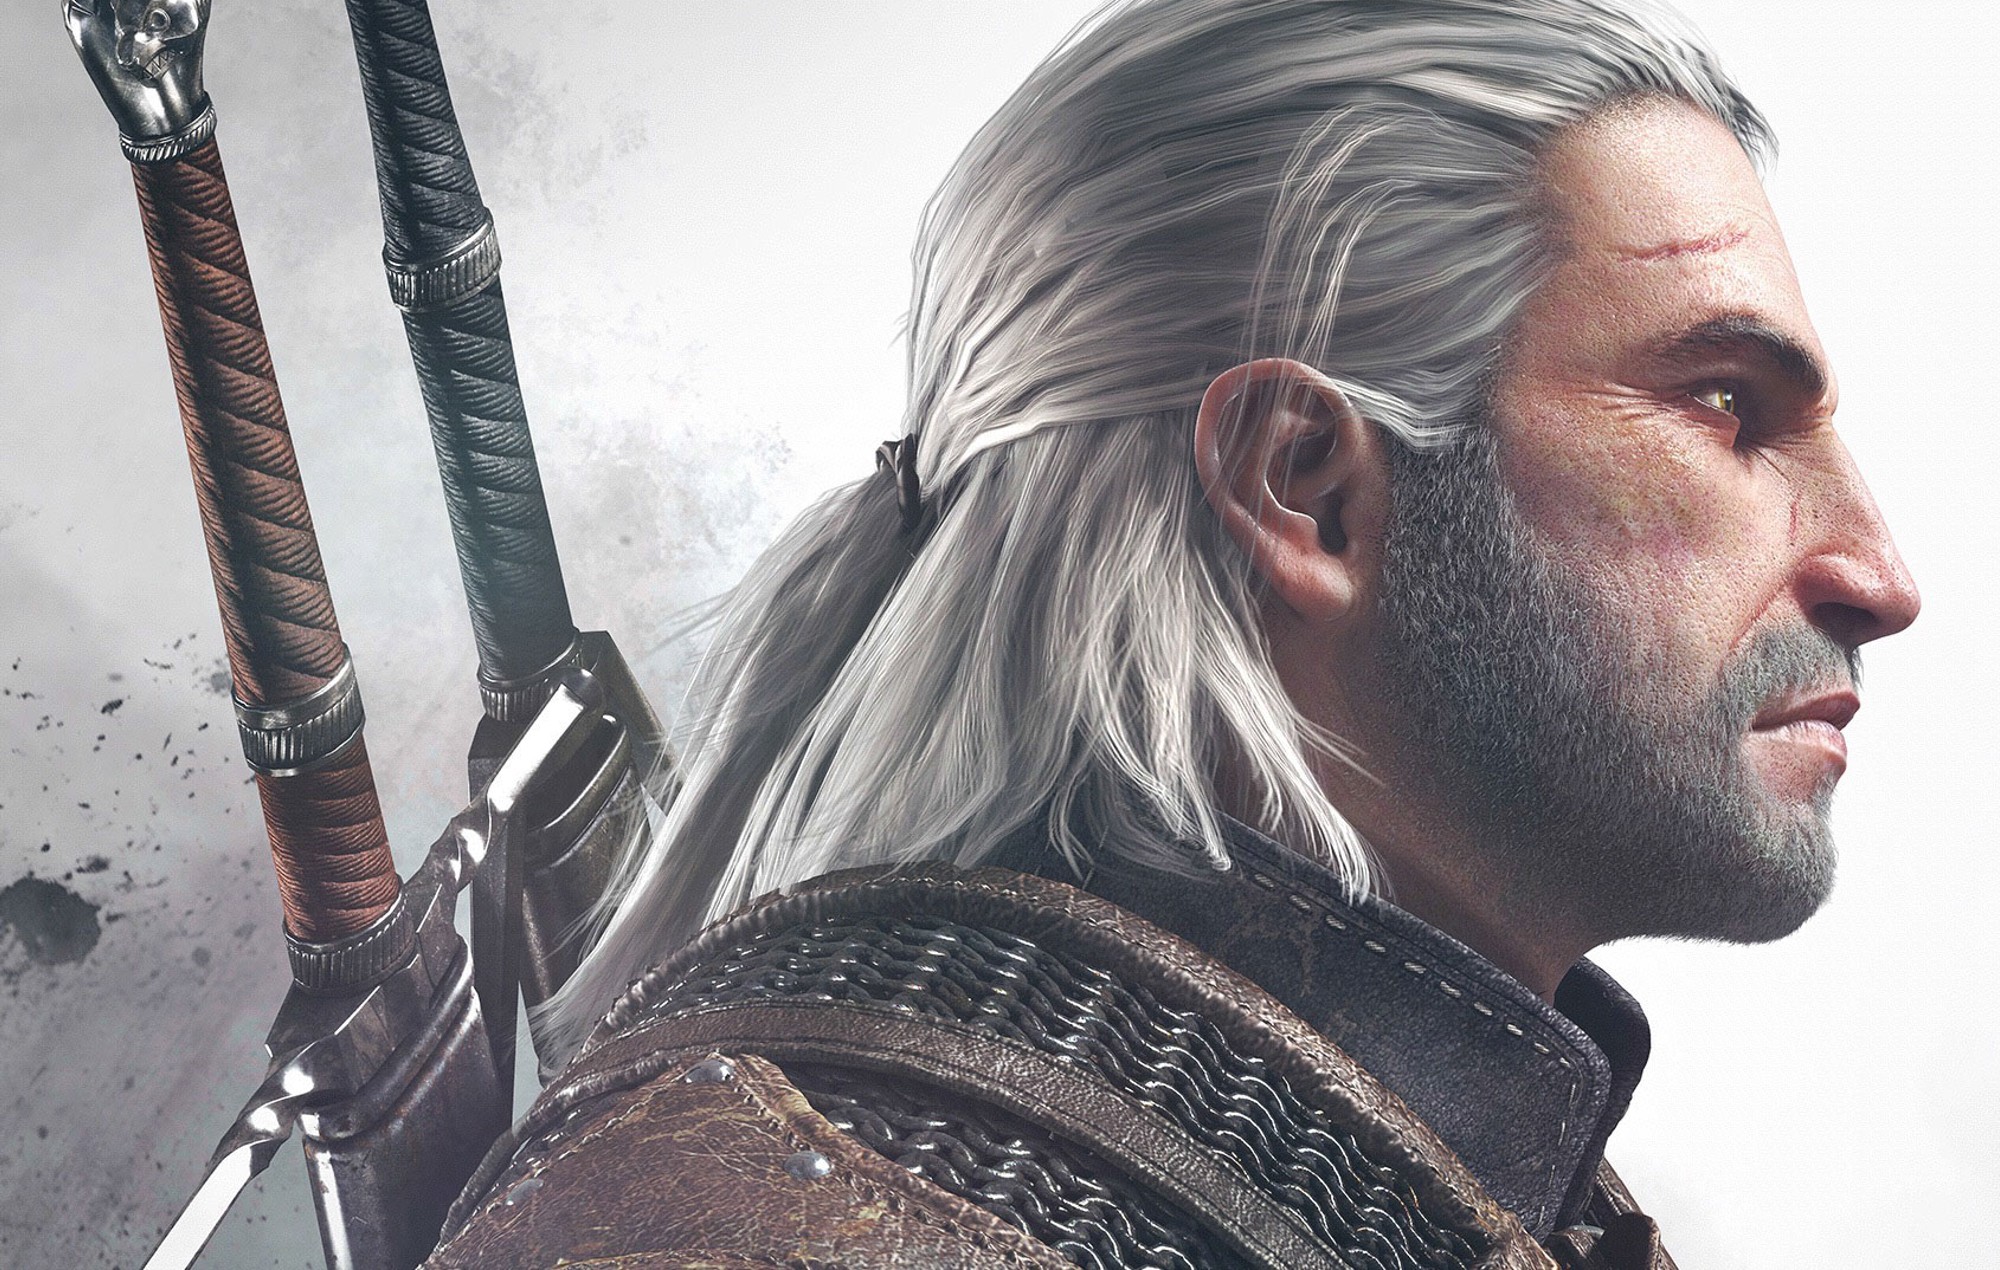 Doug Cockle, voix de Geralt dans "The Witcher", révèle un diagnostic de cancer